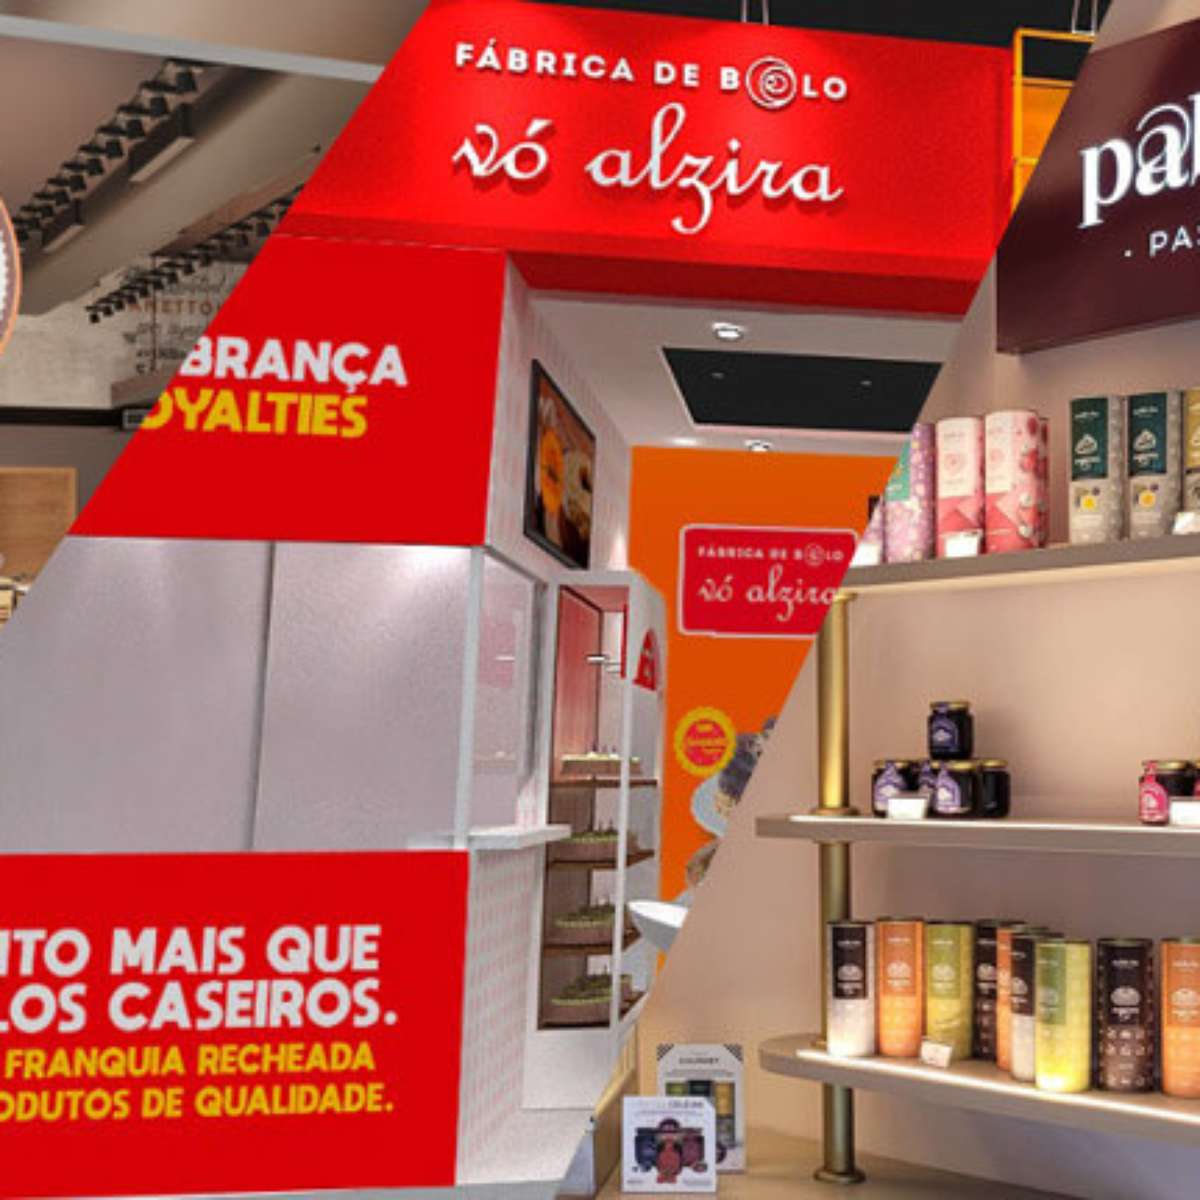 Fábrica de Bolo Vó Alzira lança novo layout para suas lojas